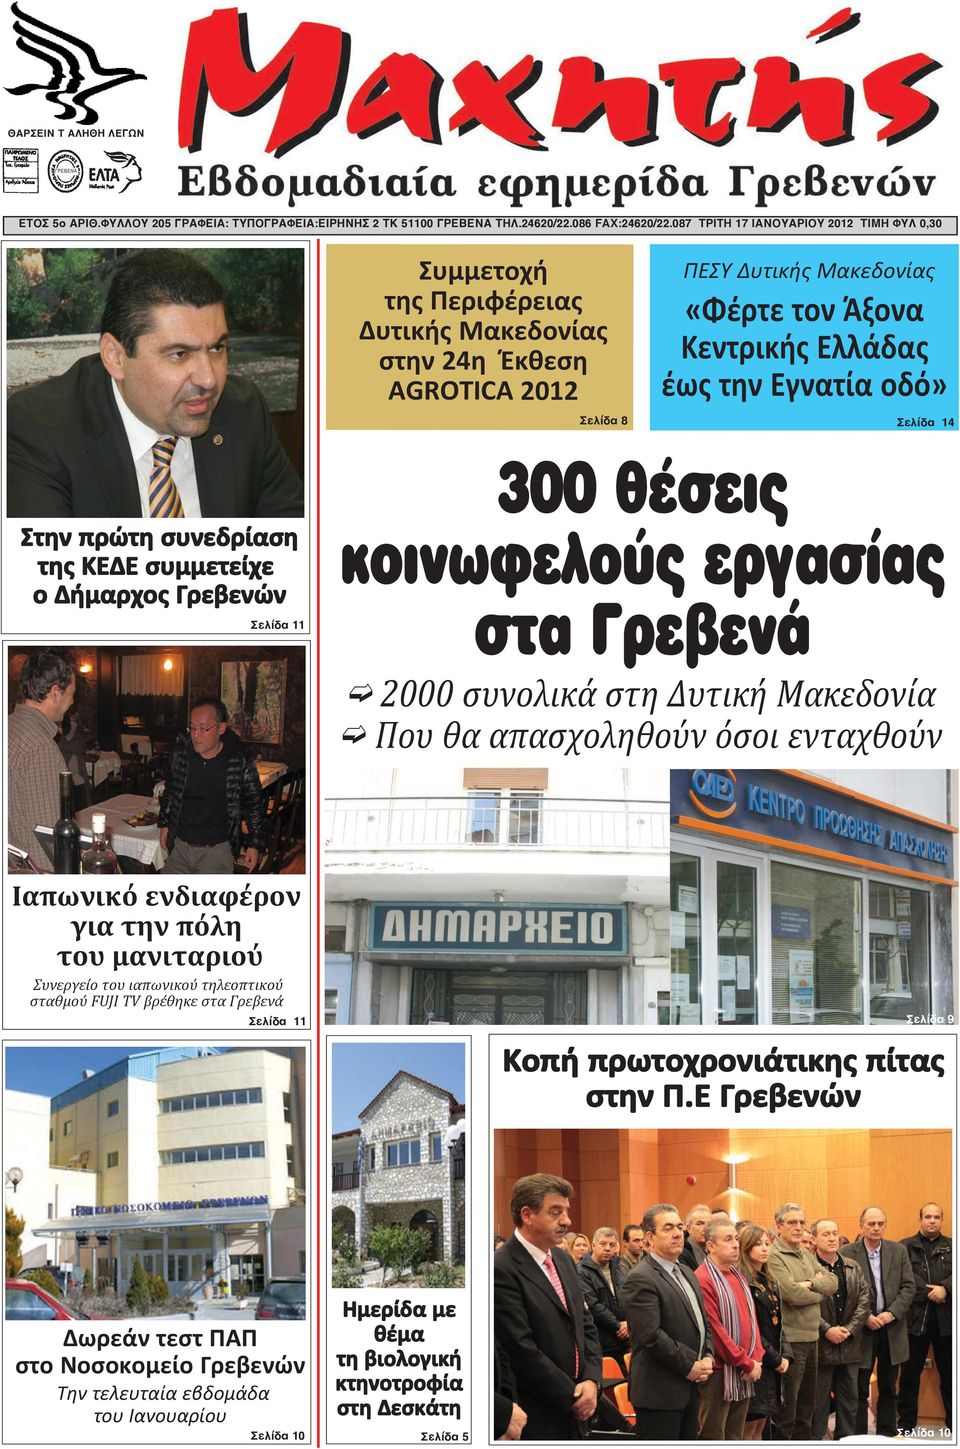 Σελίδα 8 Σελίδα 14 Στην πρώτη συνεδρίαση της ΚΕΔΕ συμμετείχε ο Δήμαρχος Γρεβενών Σελίδα 11 300 θέσεις κοινωφελούς εργασίας στα Γρεβενά Î 2000 συνολικά στη Δυτική Μακεδονία Î Που θα απασχοληθούν όσοι